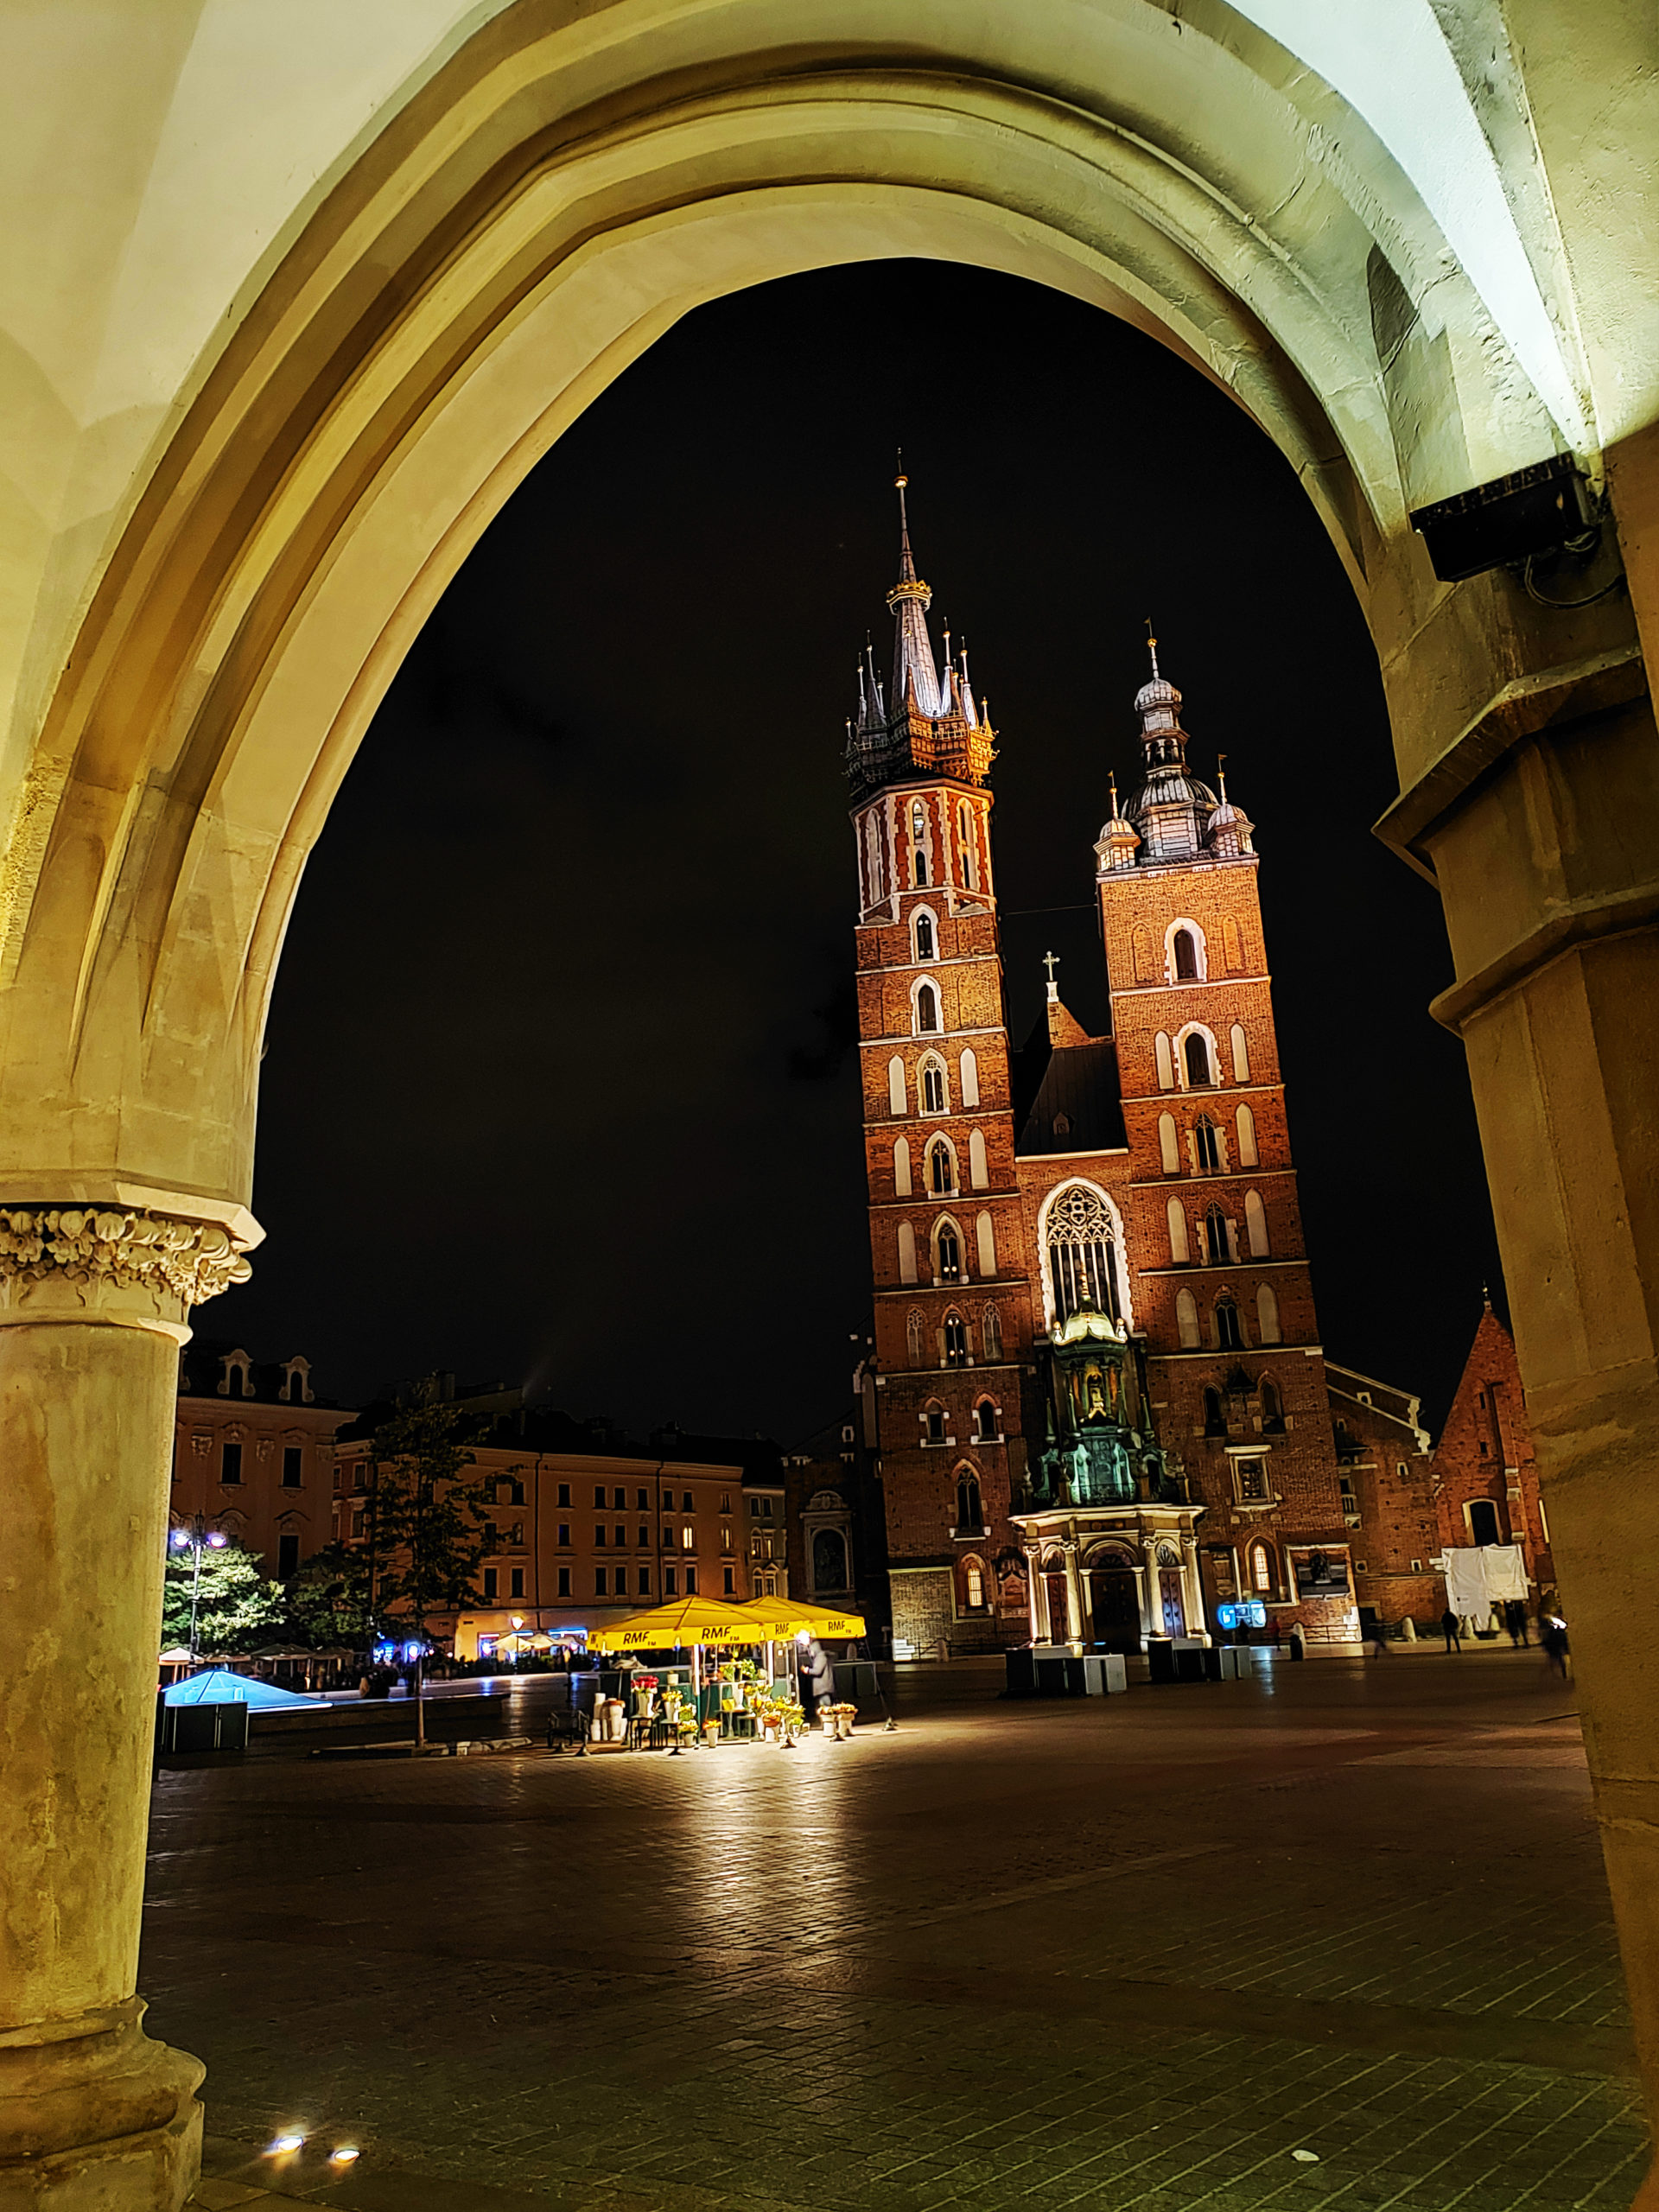 25 Photos To Inspire You To Book A Trip To Poland